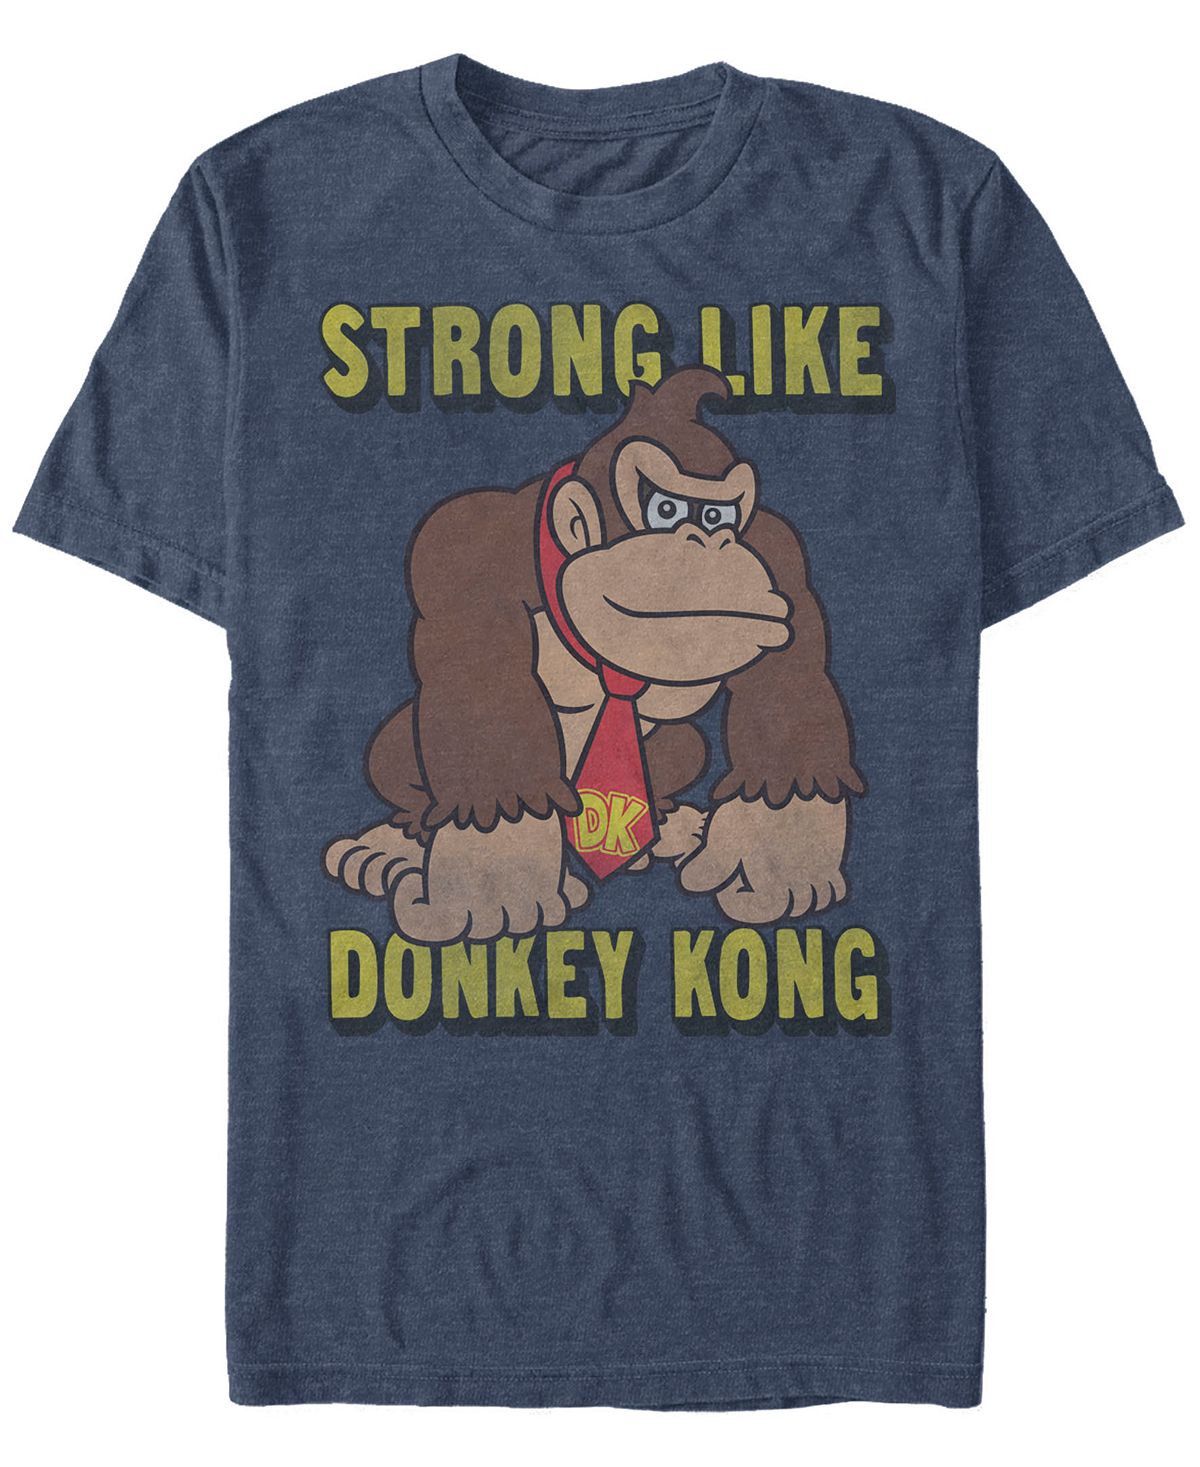 Мужская футболка с коротким рукавом nintendo donkey kong strong like donkey kong Fifth Sun, мульти фигурка amiibo donkey kong